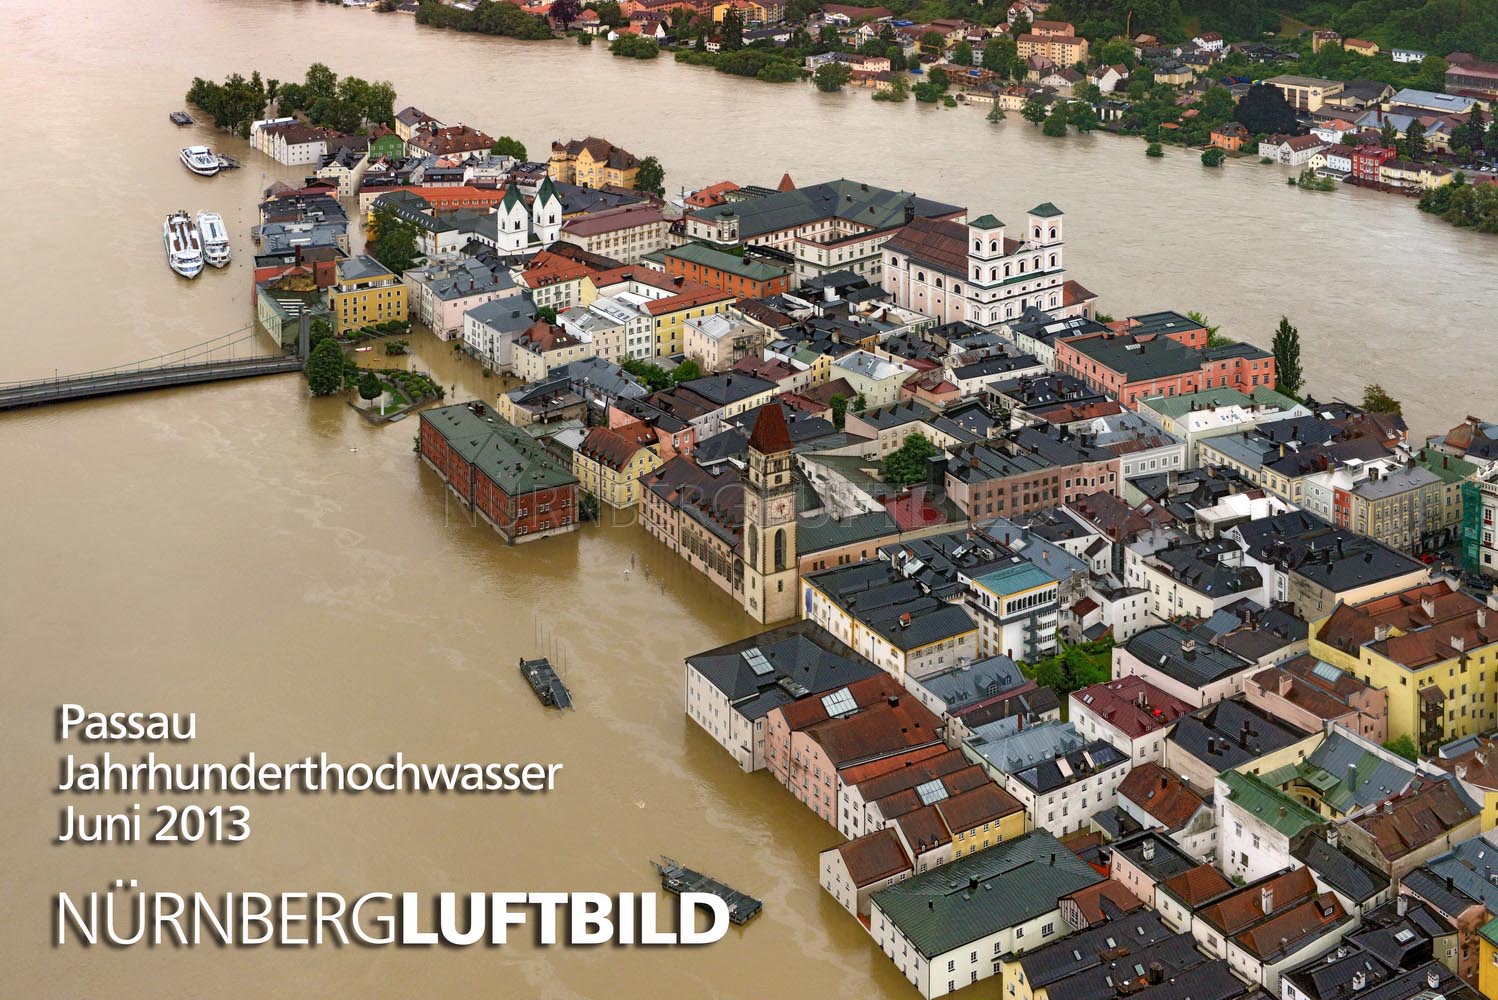 Passau, Jahrhunderthochwasser, Juni 2013